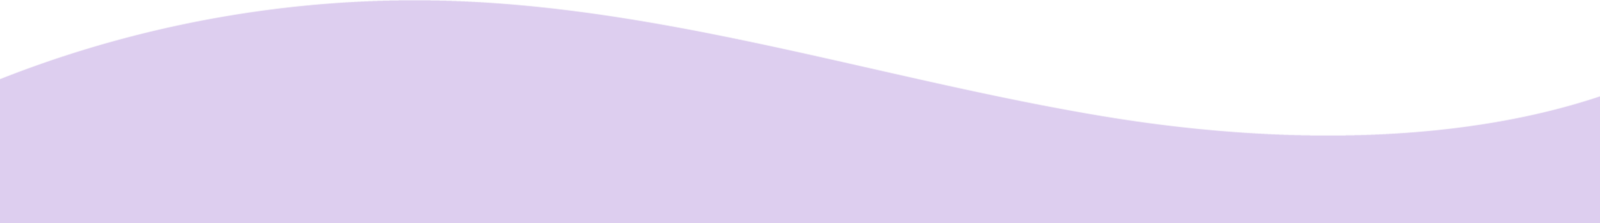 4m_purplewave_footer